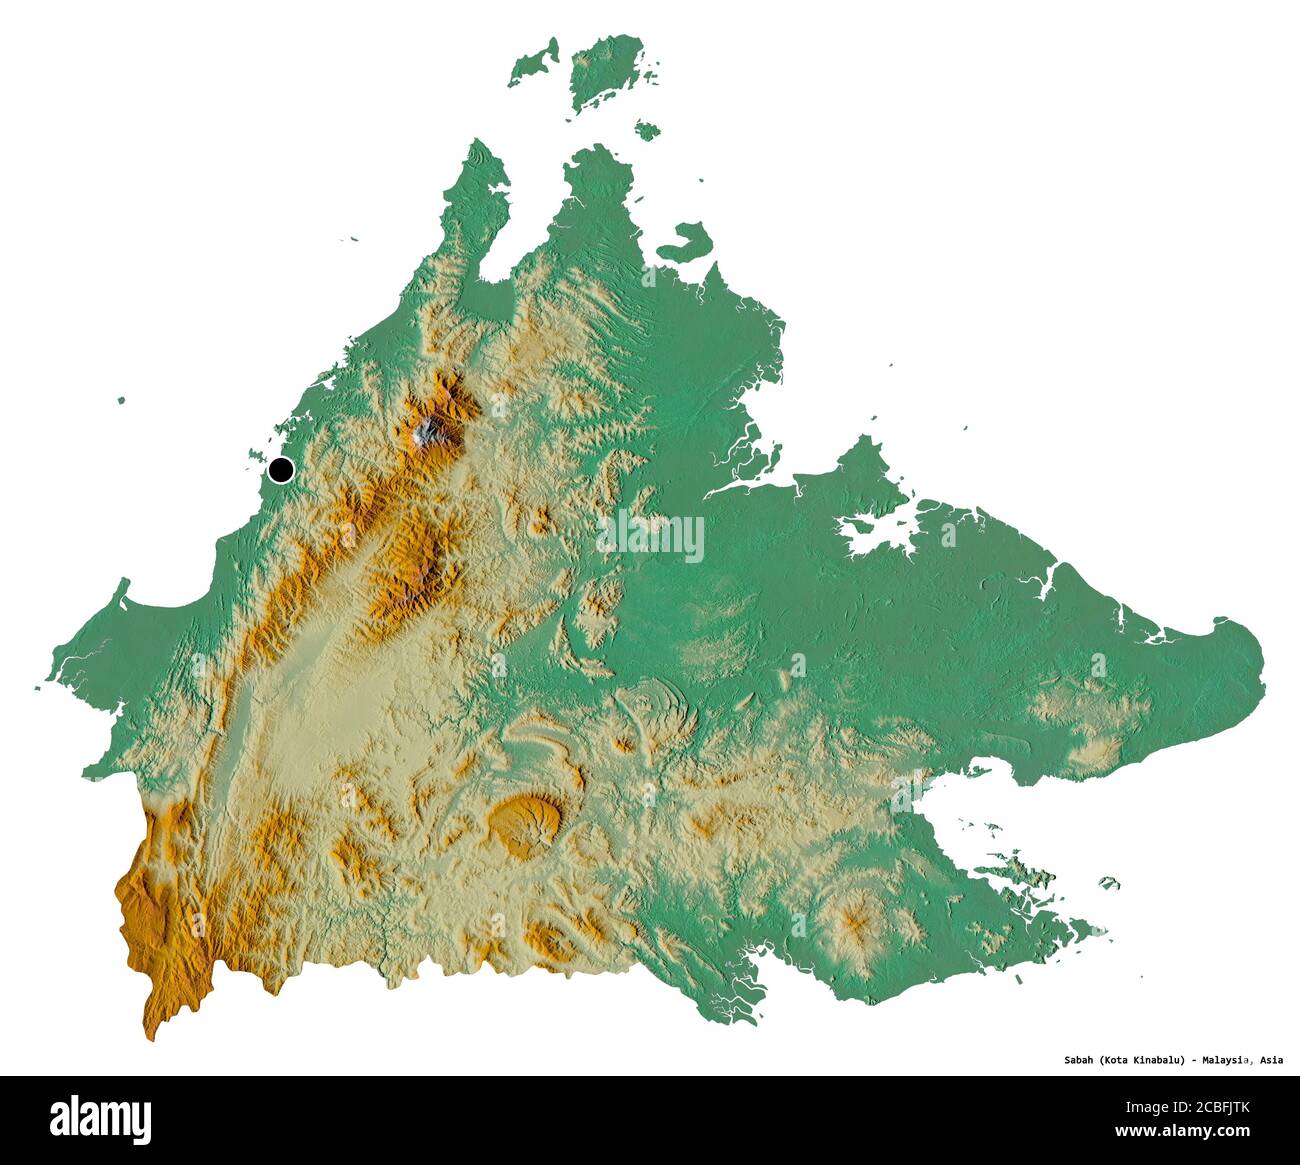 Forme de Sabah, État de Malaisie, avec sa capitale isolée sur fond blanc. Carte topographique de relief. Rendu 3D Banque D'Images